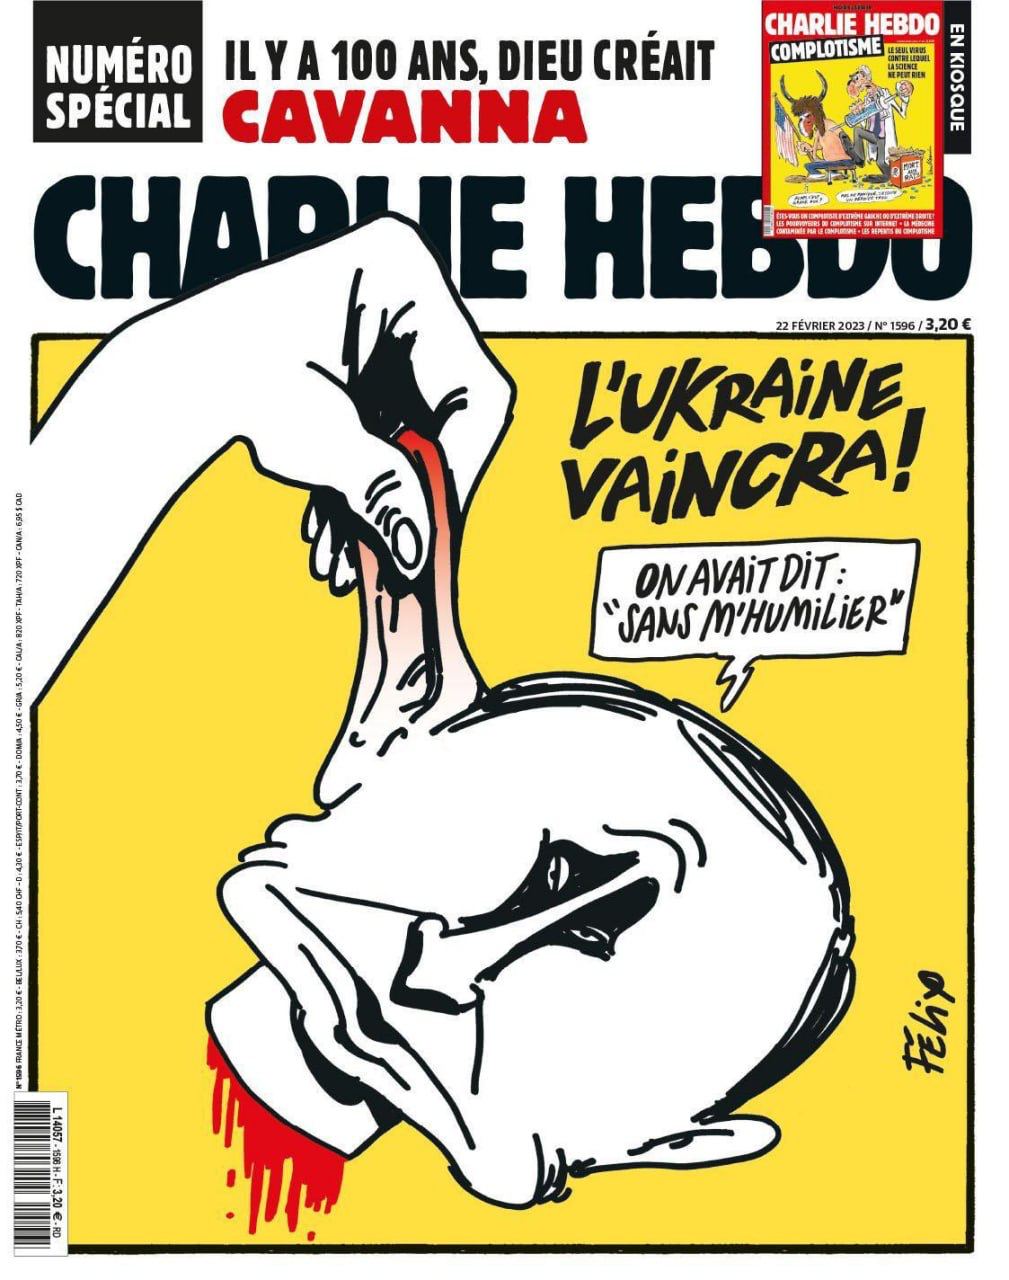 Украина победит! С такой обложкой вышел еженедельный французский журнал Charlie Hebdo 